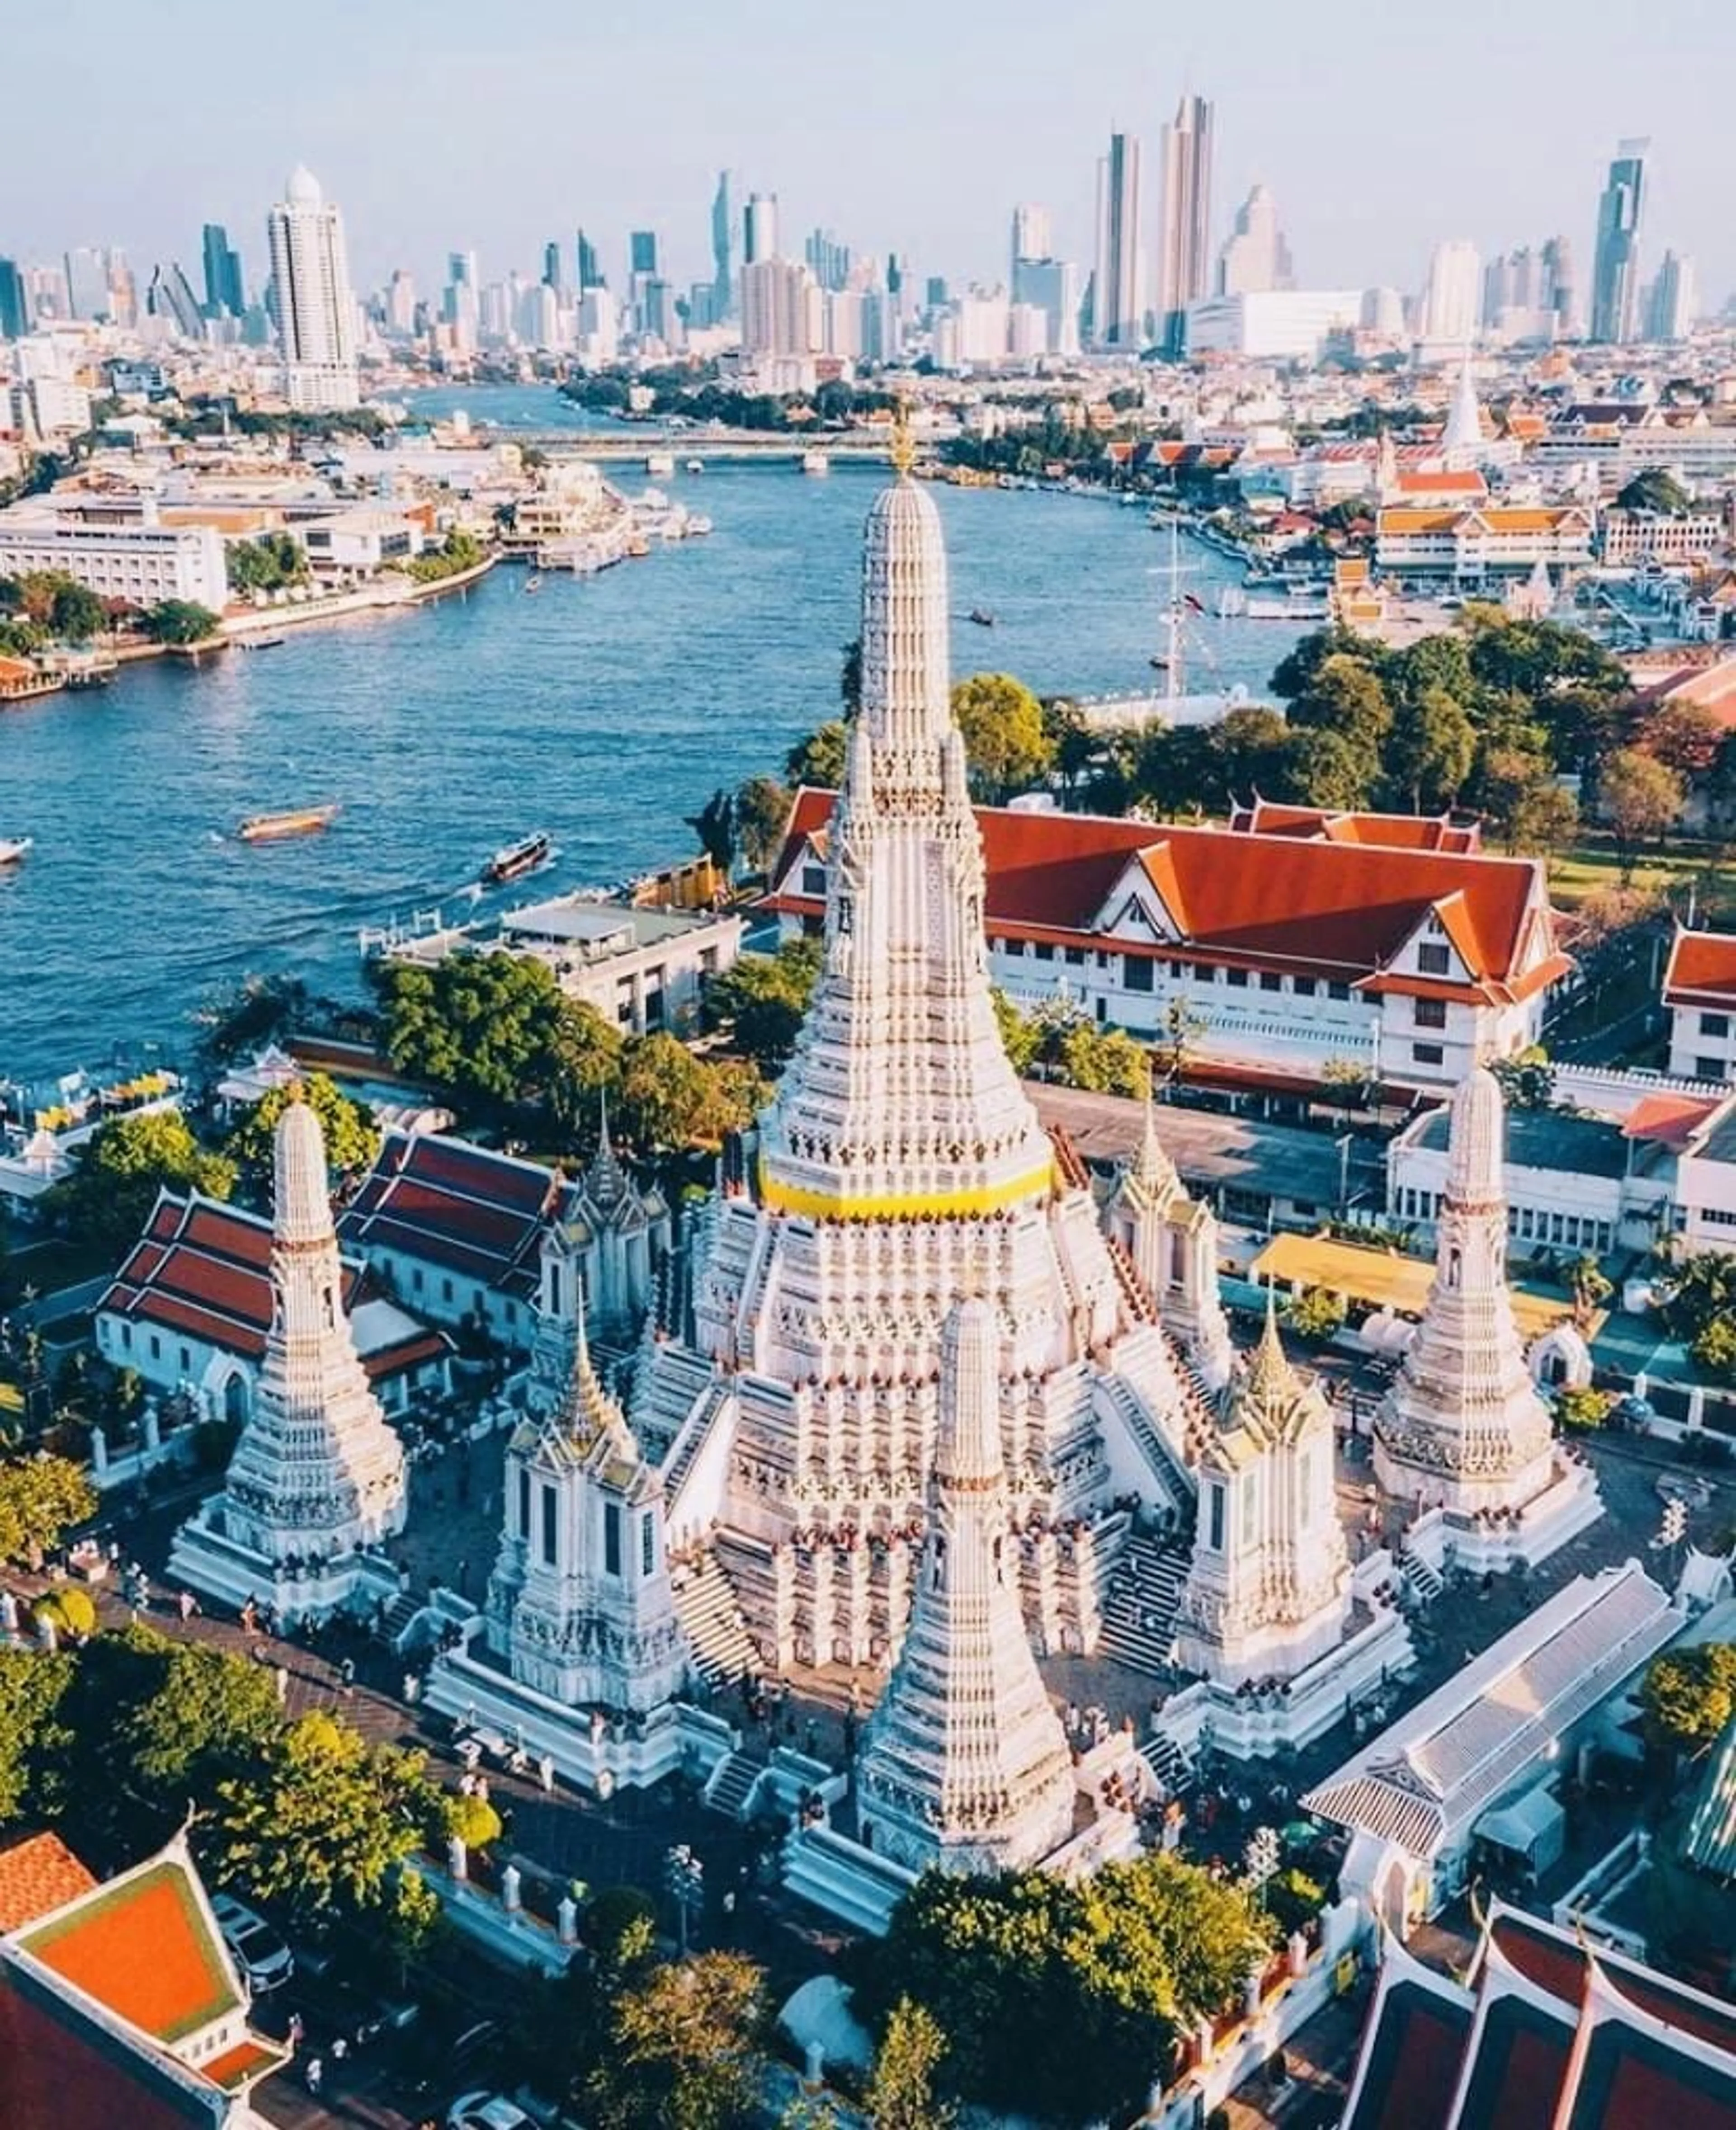 Chào mừng đến với bài viết về Wat Nakaram - một ngôi chùa nổi tiếng tại Phuket, Thái Lan